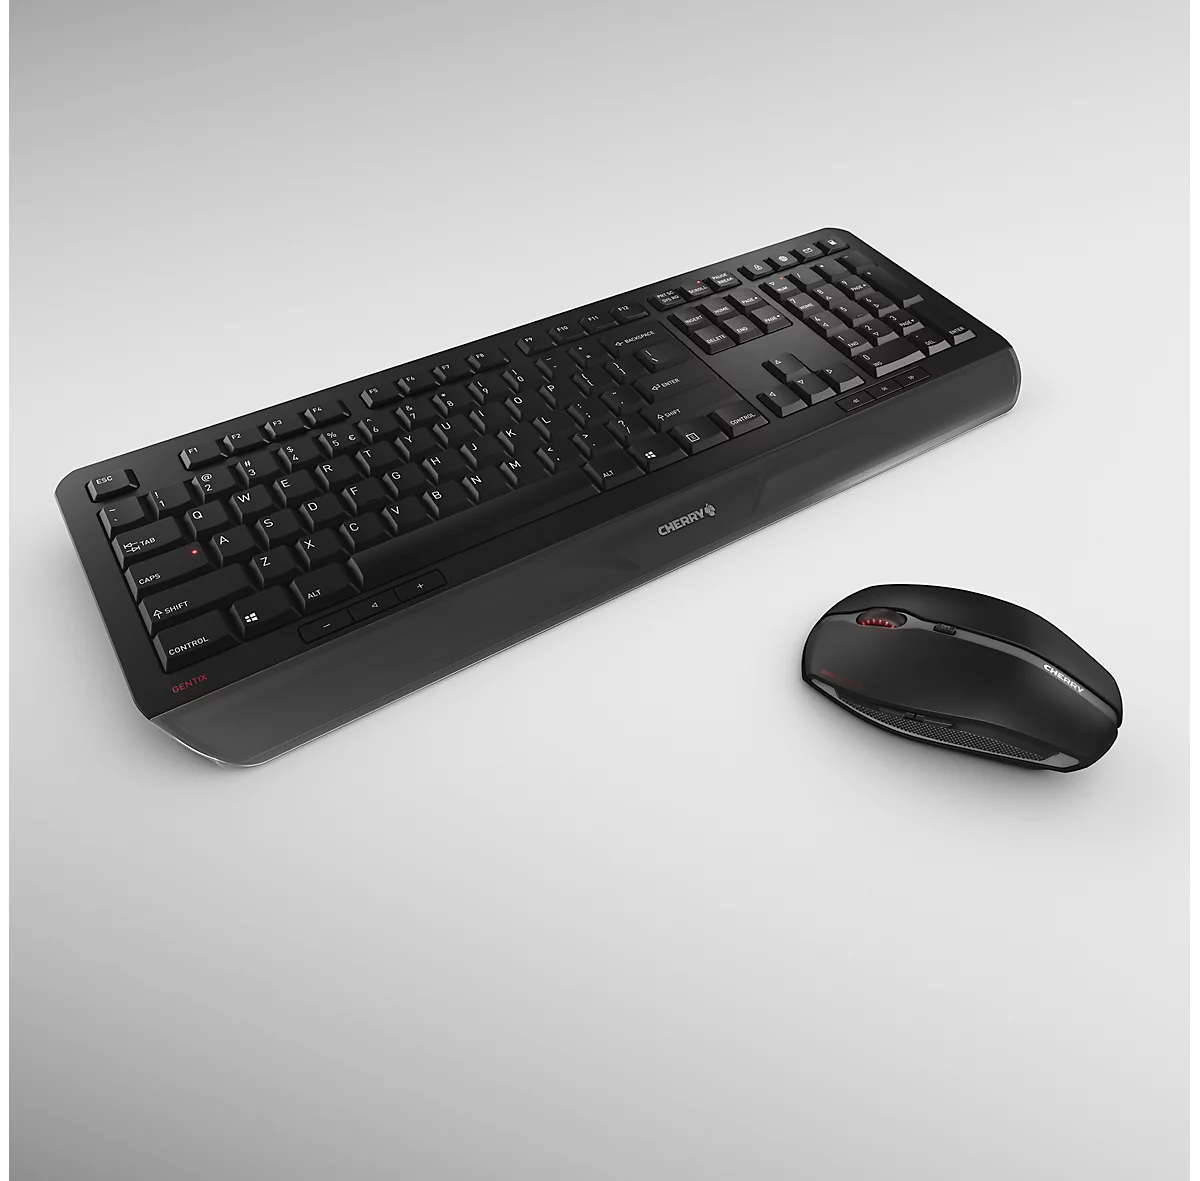 Funktastatur mit Maus CHERRY GENTIX DESKTOP, ergonomisch, QWERTZ-Tastatur, Maus mit 6 Tasten & Scrollrad, 1000/2000 dpi, bis 10 m, USB-Empfänger